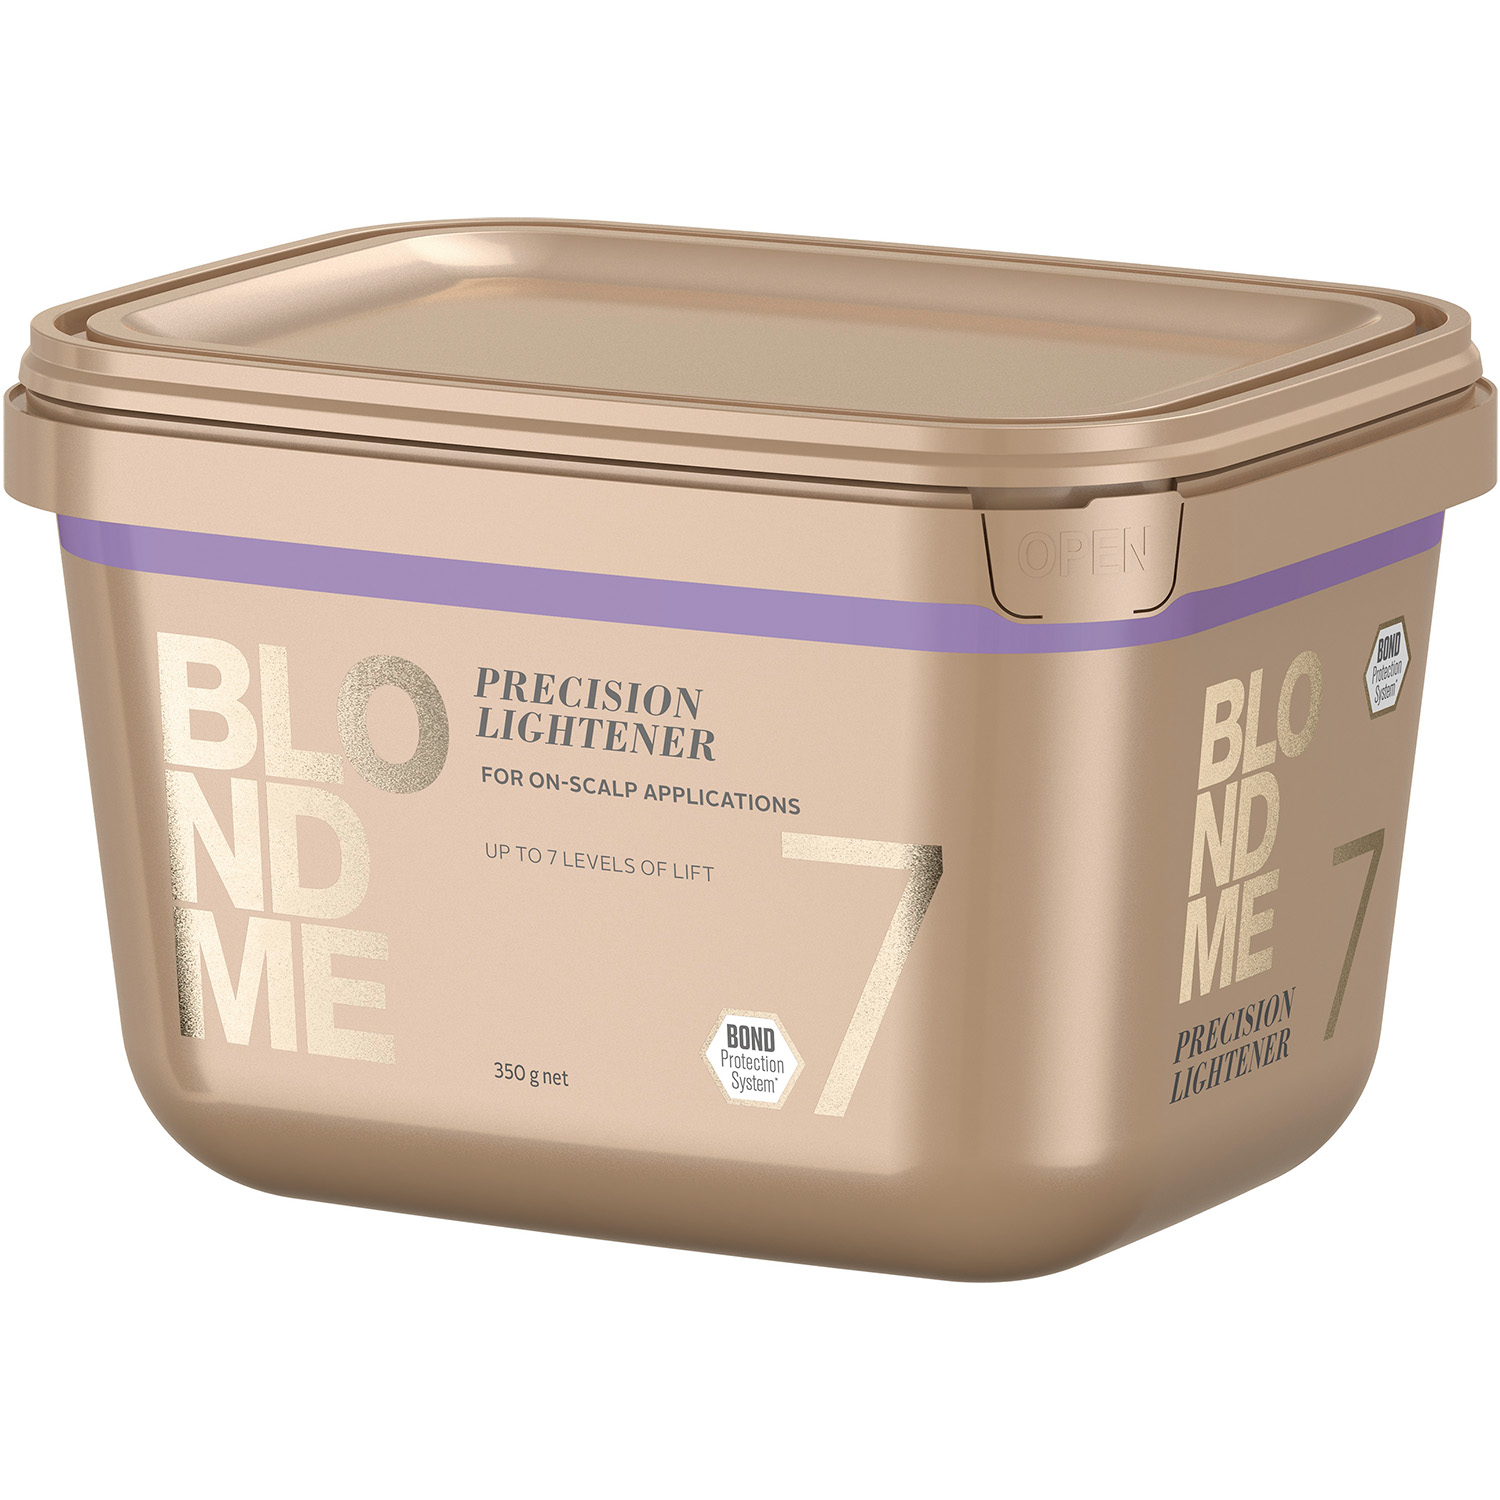 Бондинг-порошок для осветления волос BlondMe Precision Lightener 7, 350 г - фото 1